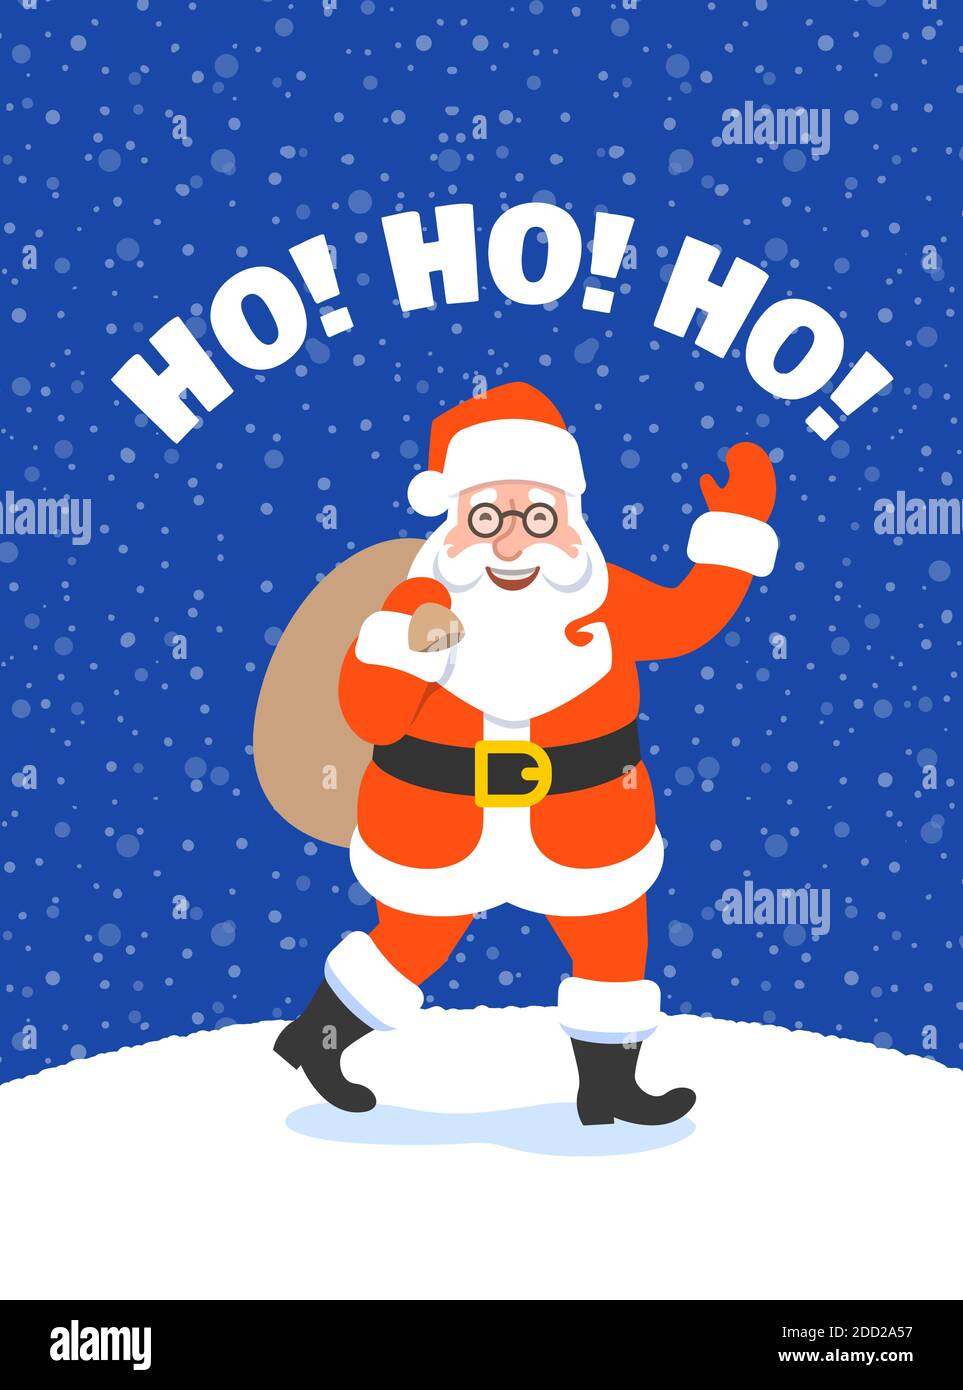 Weihnachtsmann mit einer Tasche voller Geschenke winken Hand und gehen zu Kindern. Cartoon Vektorgrafik. Verschneite Heiligabend Nacht. Lustige Weihnachten Begrütin Stock Vektor